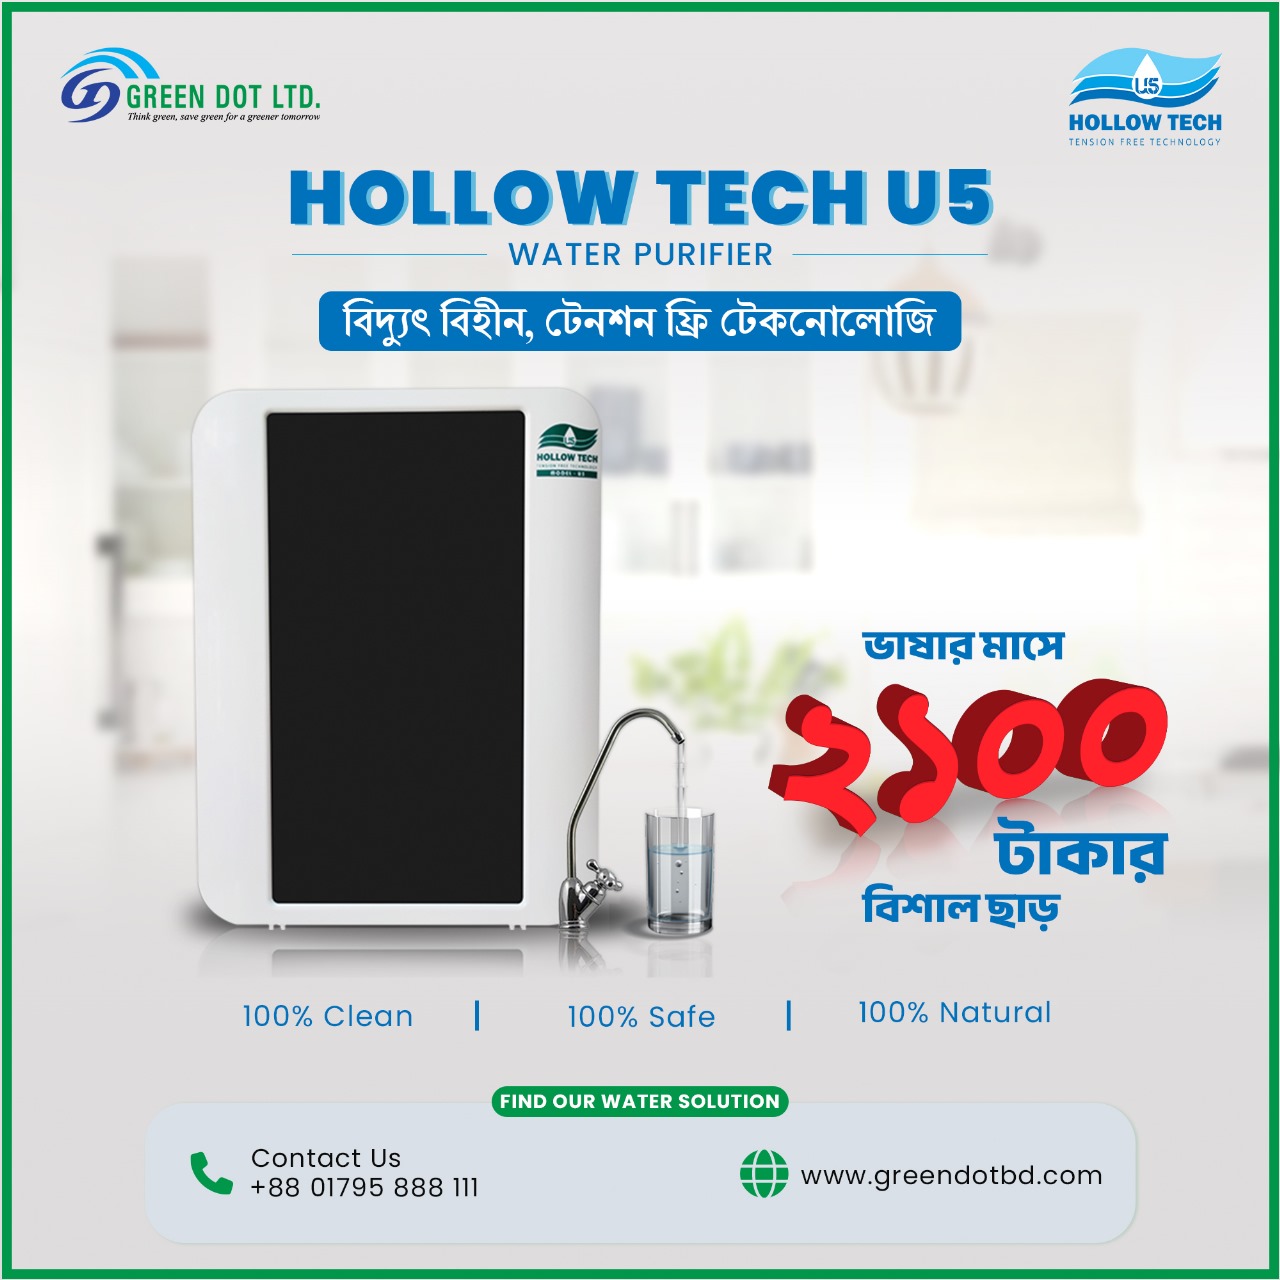 Hollow Tech Water Purifier-Discount.jpg